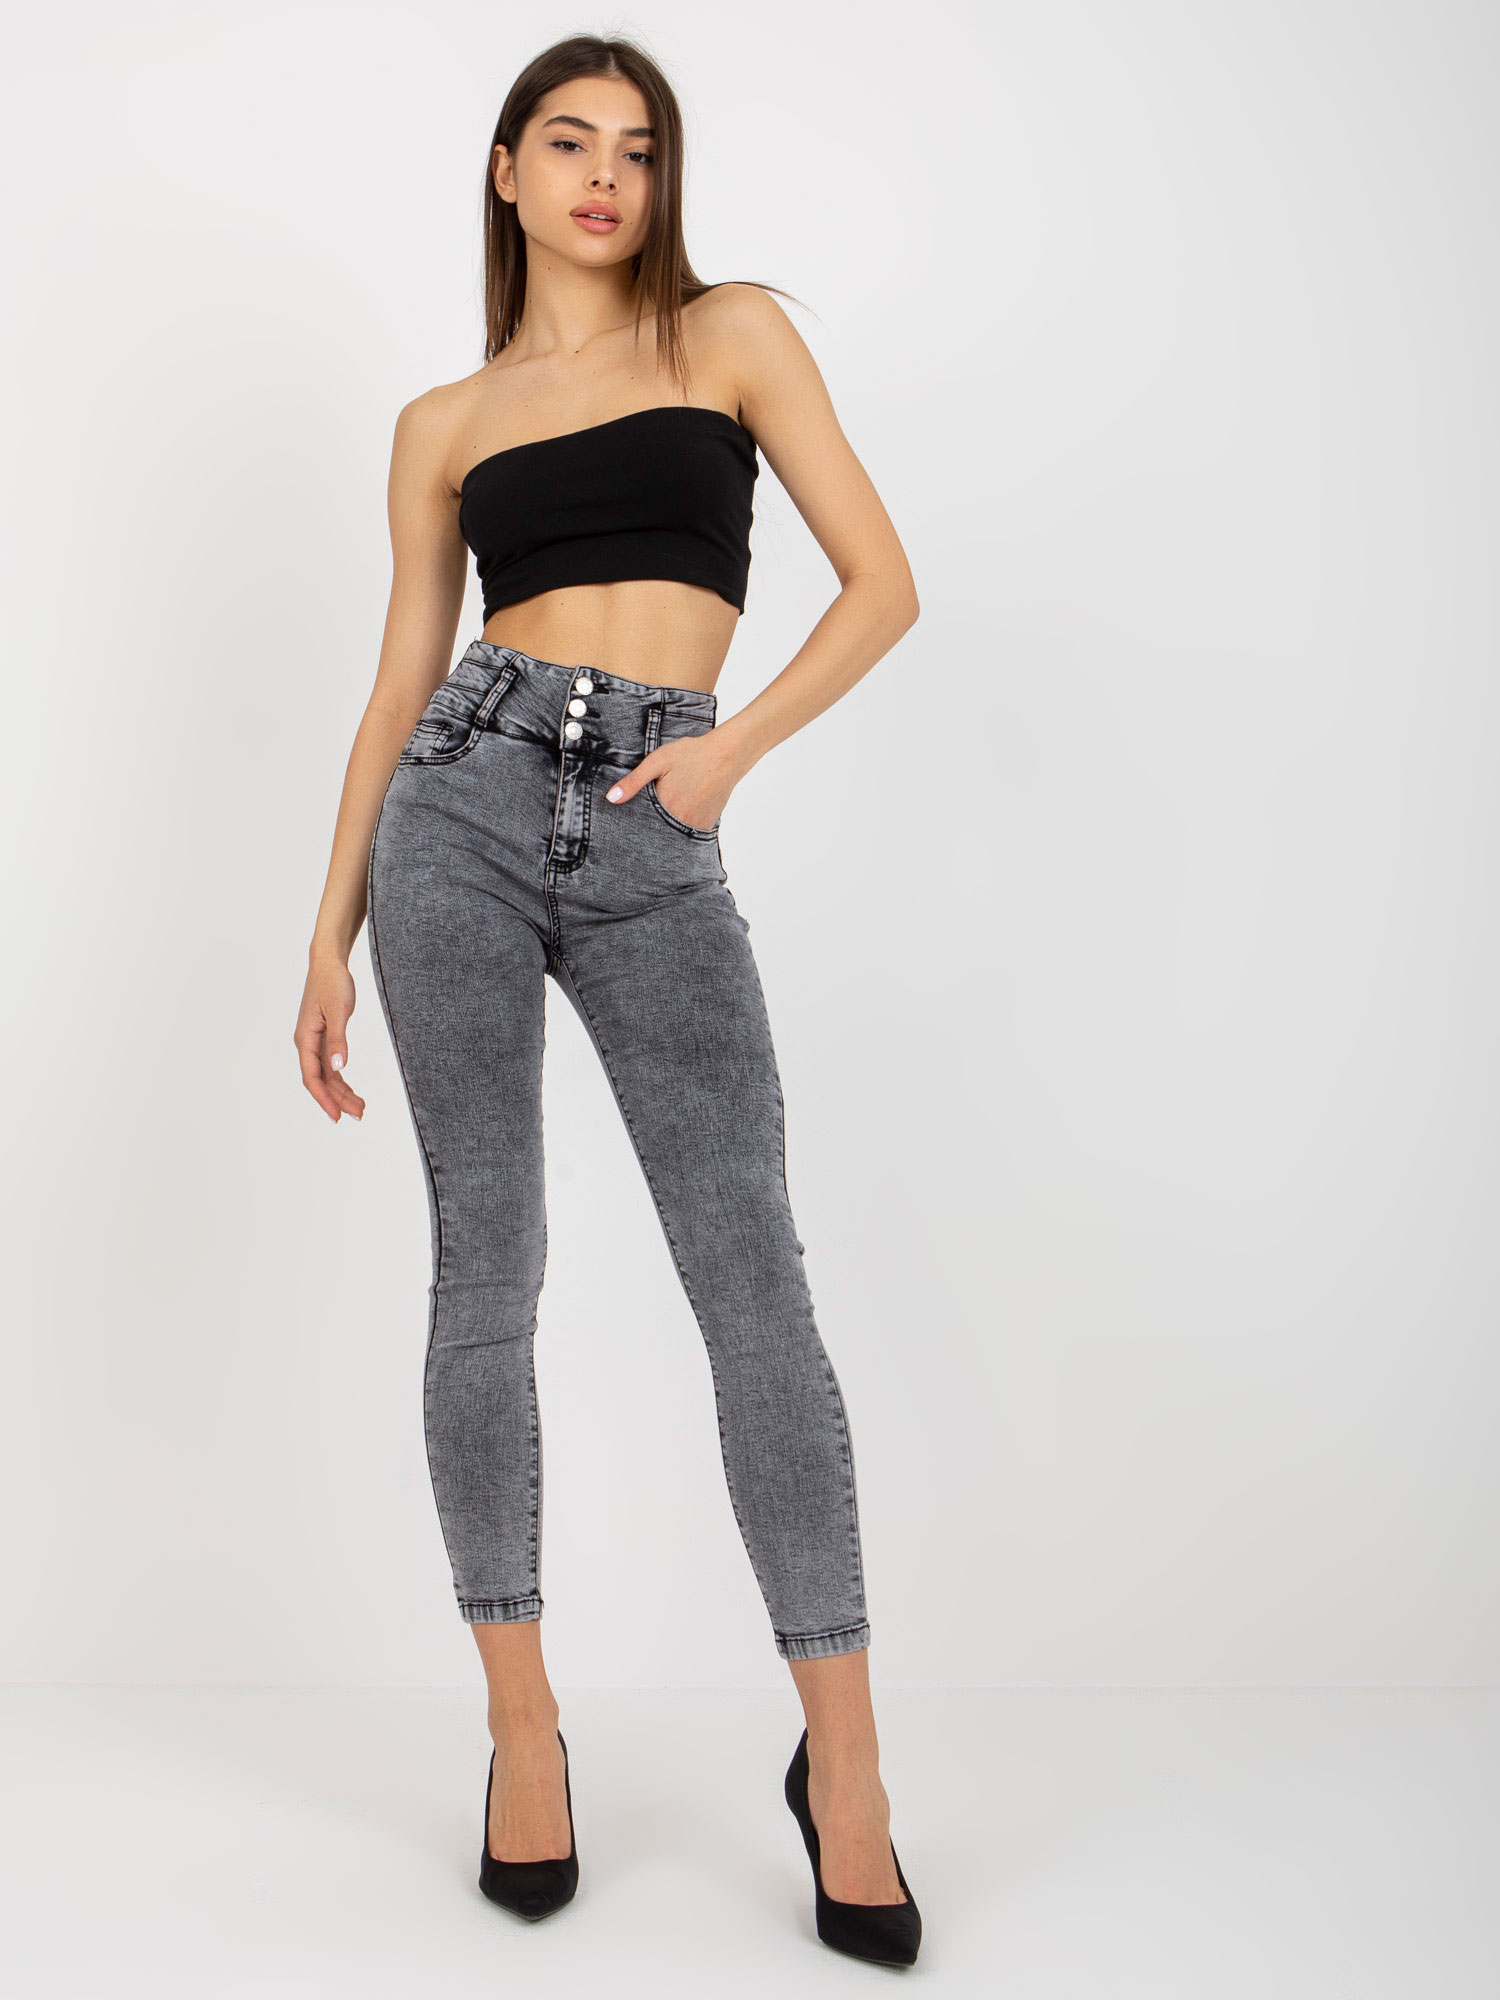 Women's dark grey jeans with high waist